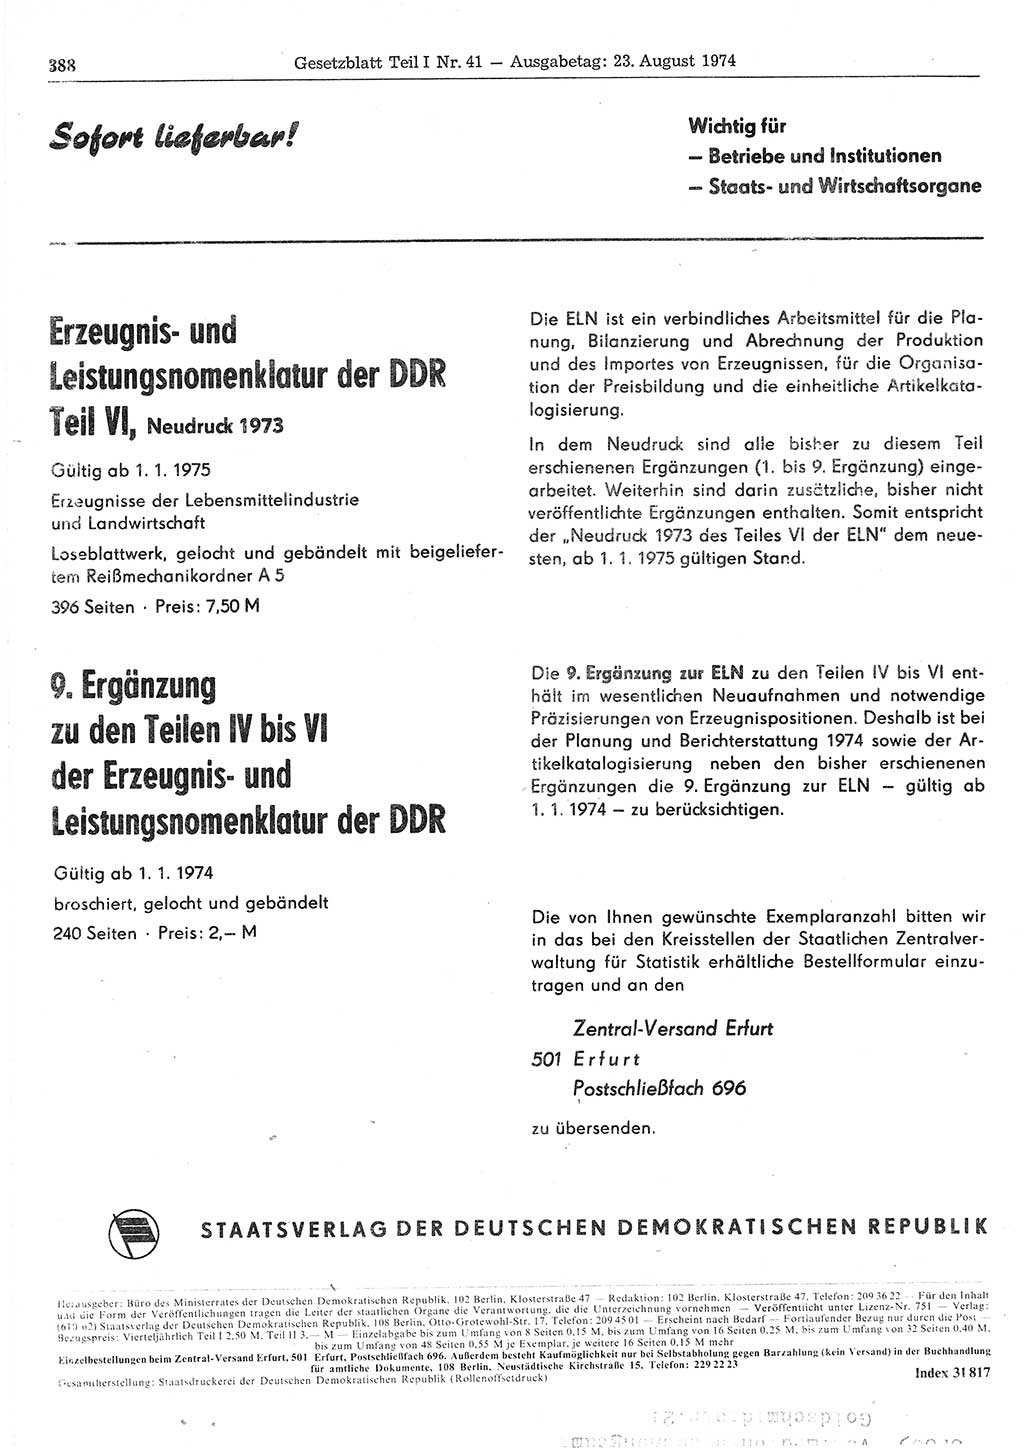 Gesetzblatt (GBl.) der Deutschen Demokratischen Republik (DDR) Teil Ⅰ 1974, Seite 388 (GBl. DDR Ⅰ 1974, S. 388)